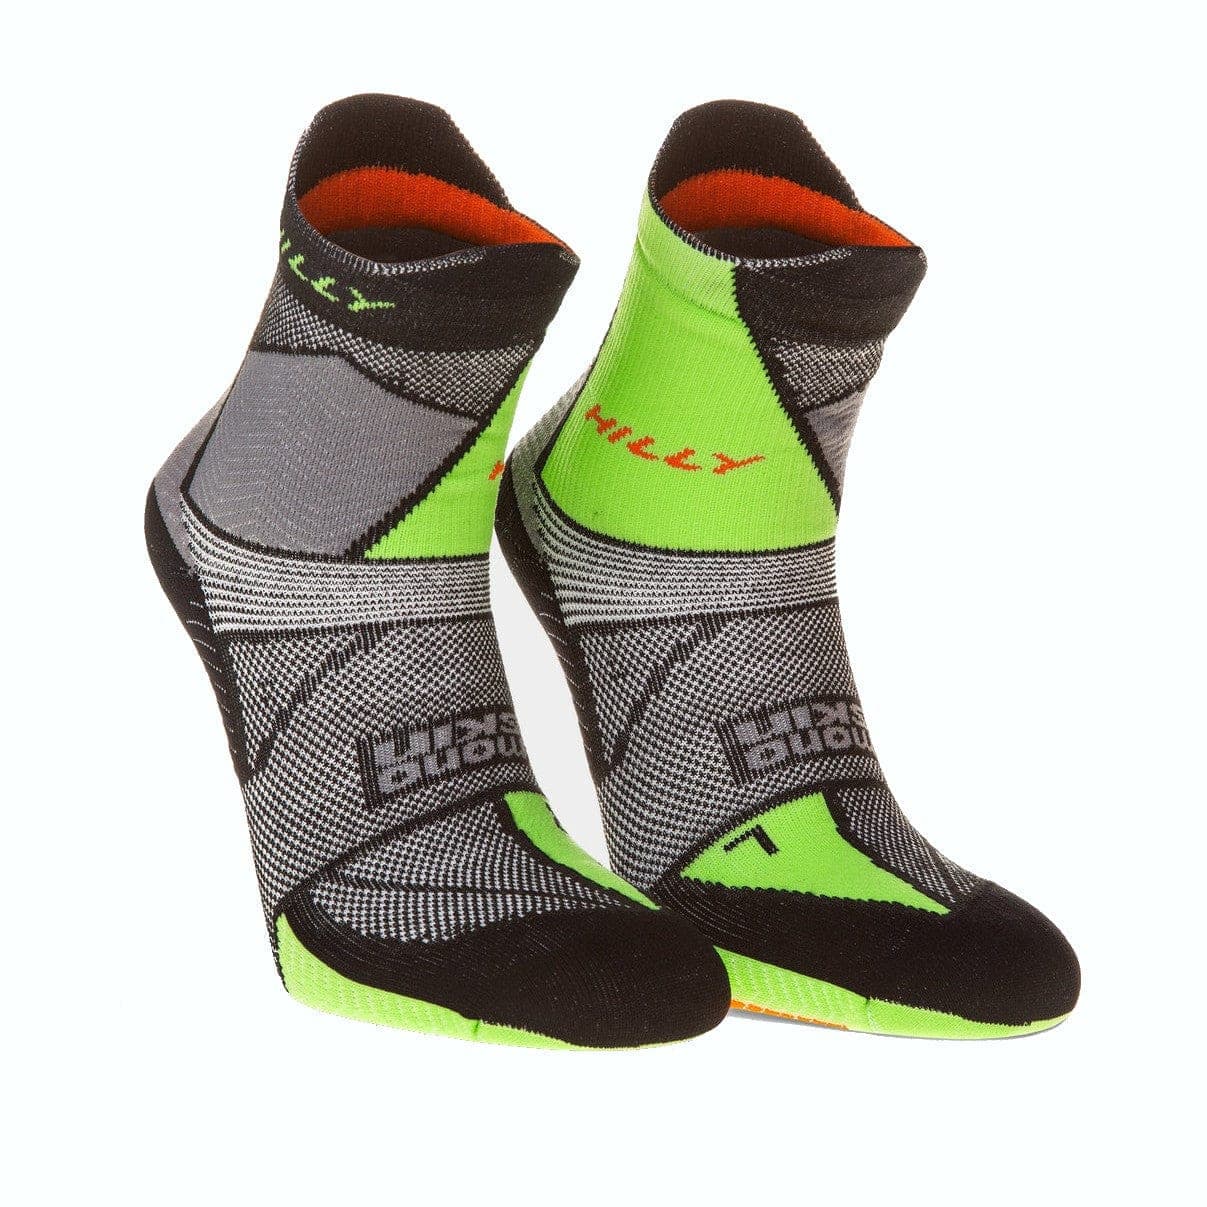 Hilly Marathon Fresh Anklet Med - Black/Grey/Lime Green